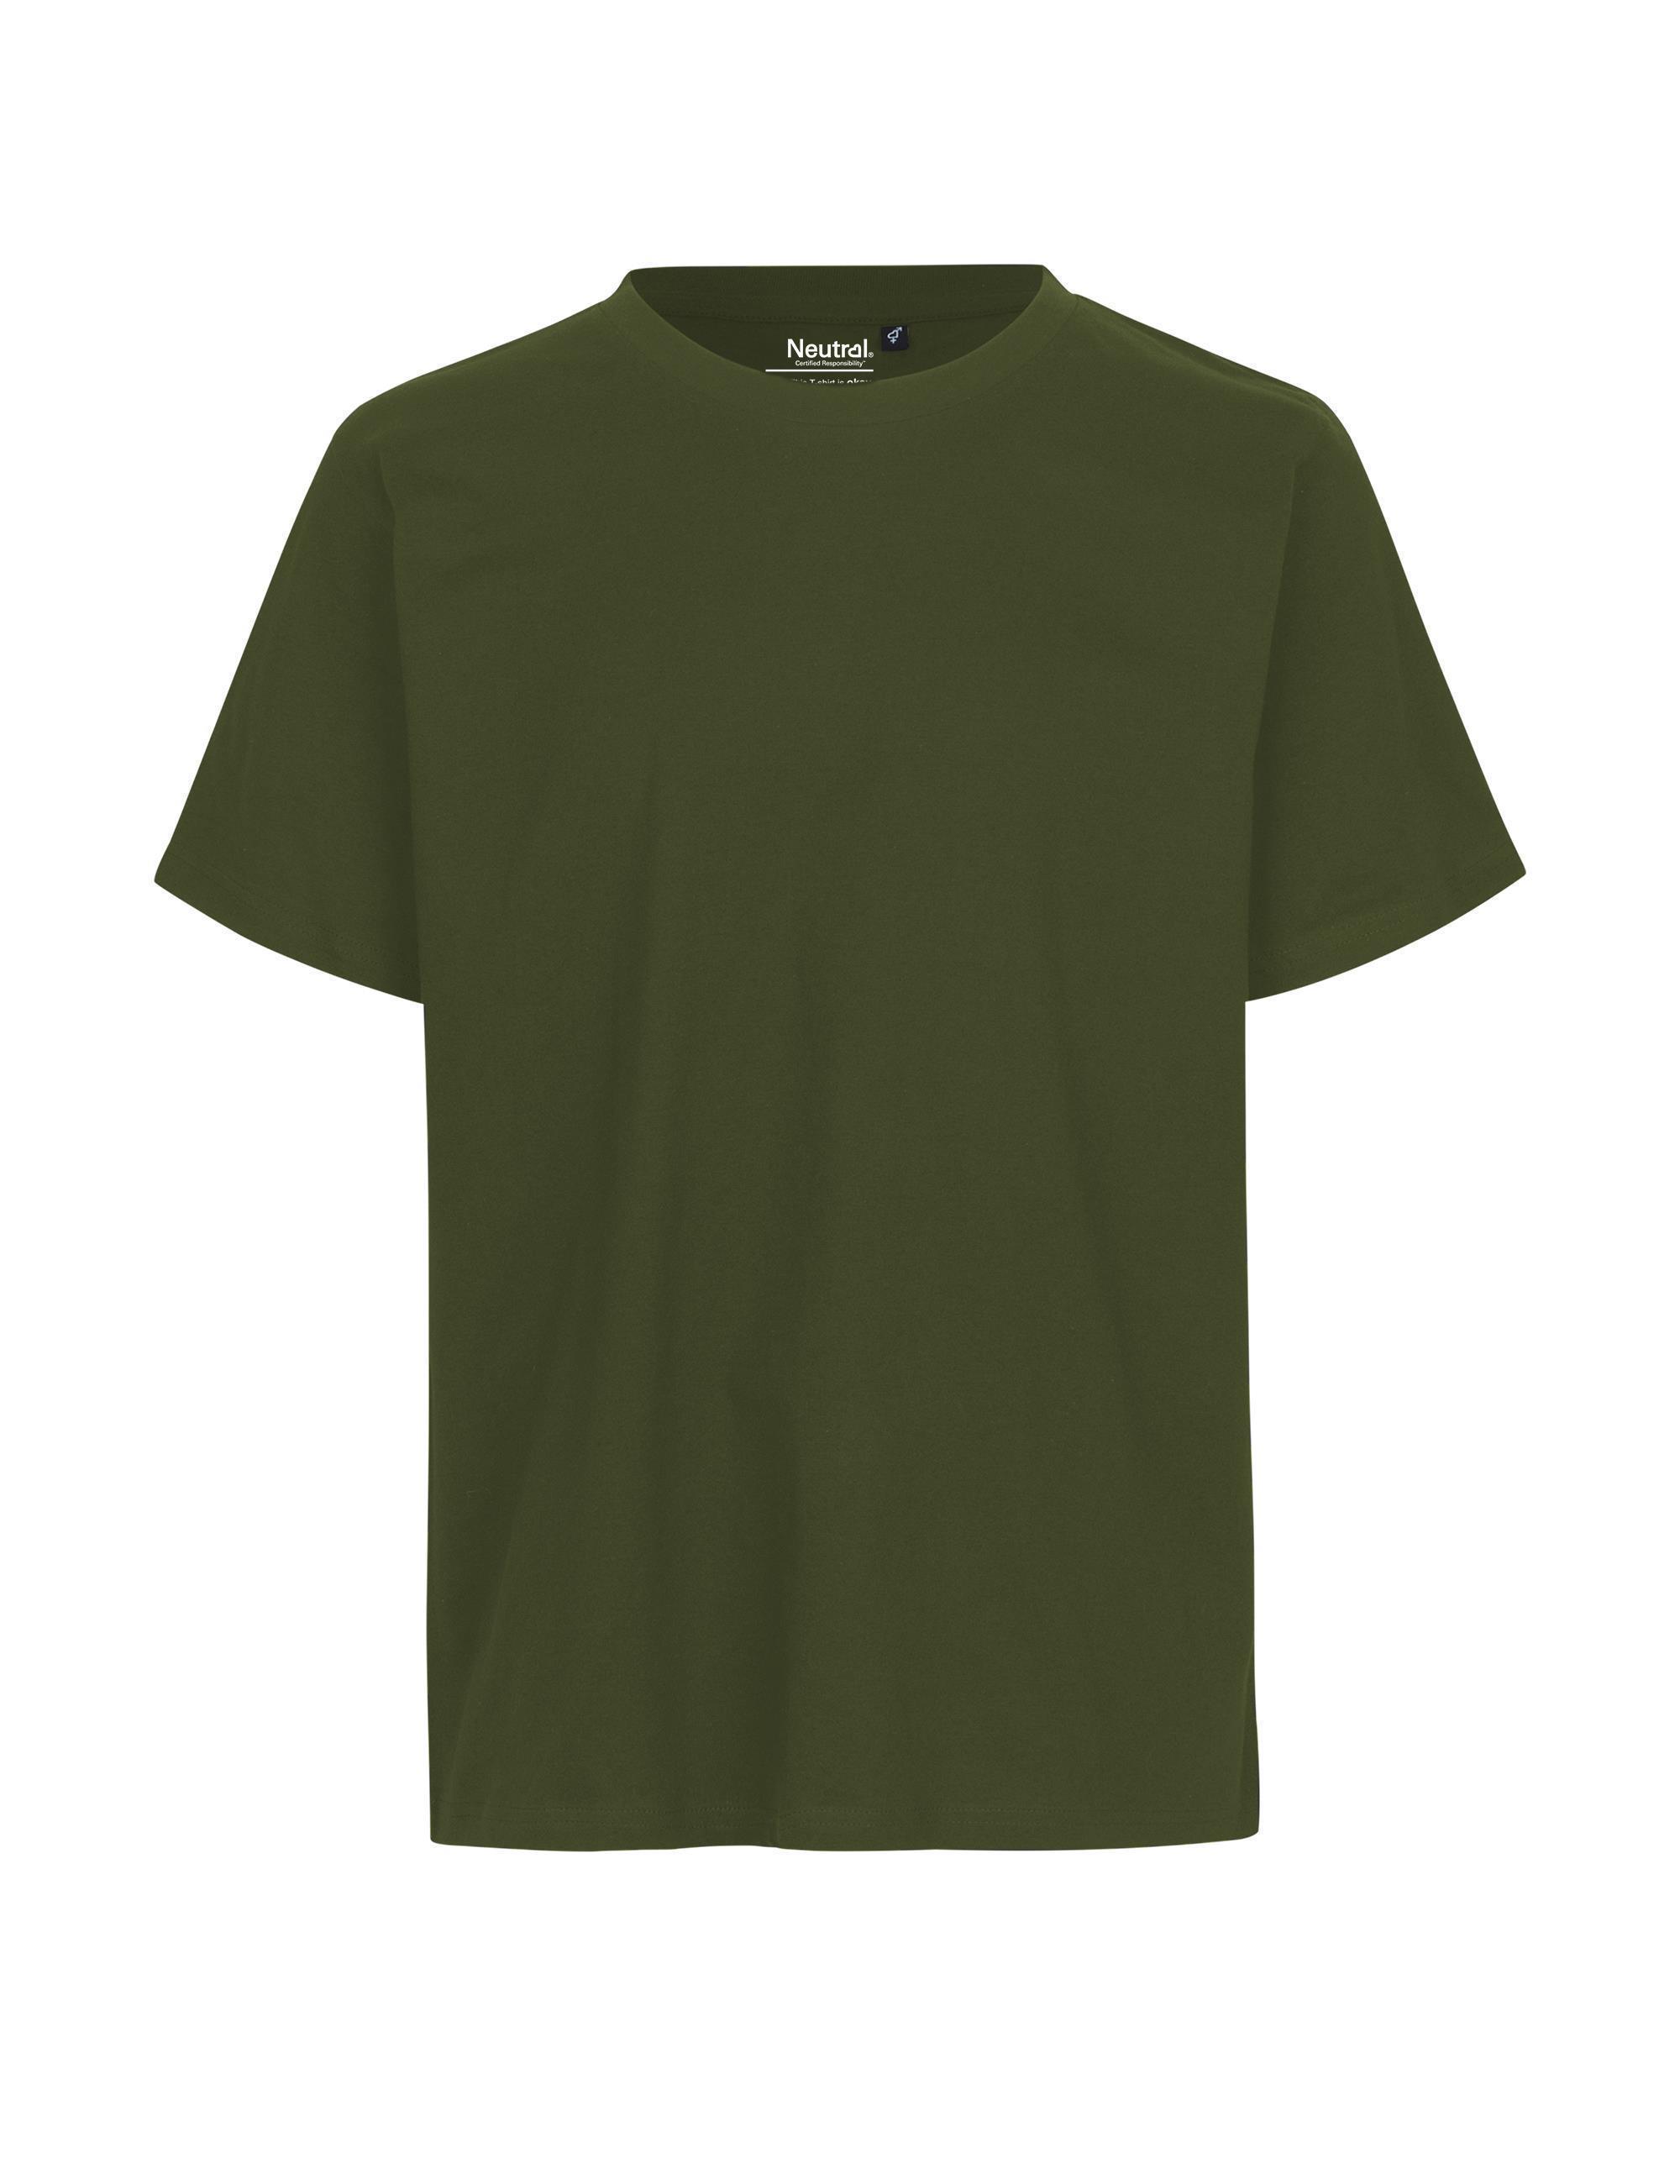 Organic Fairtrade Unisex Regular T-Shirt 155 g/m² Neutral ® Military XS